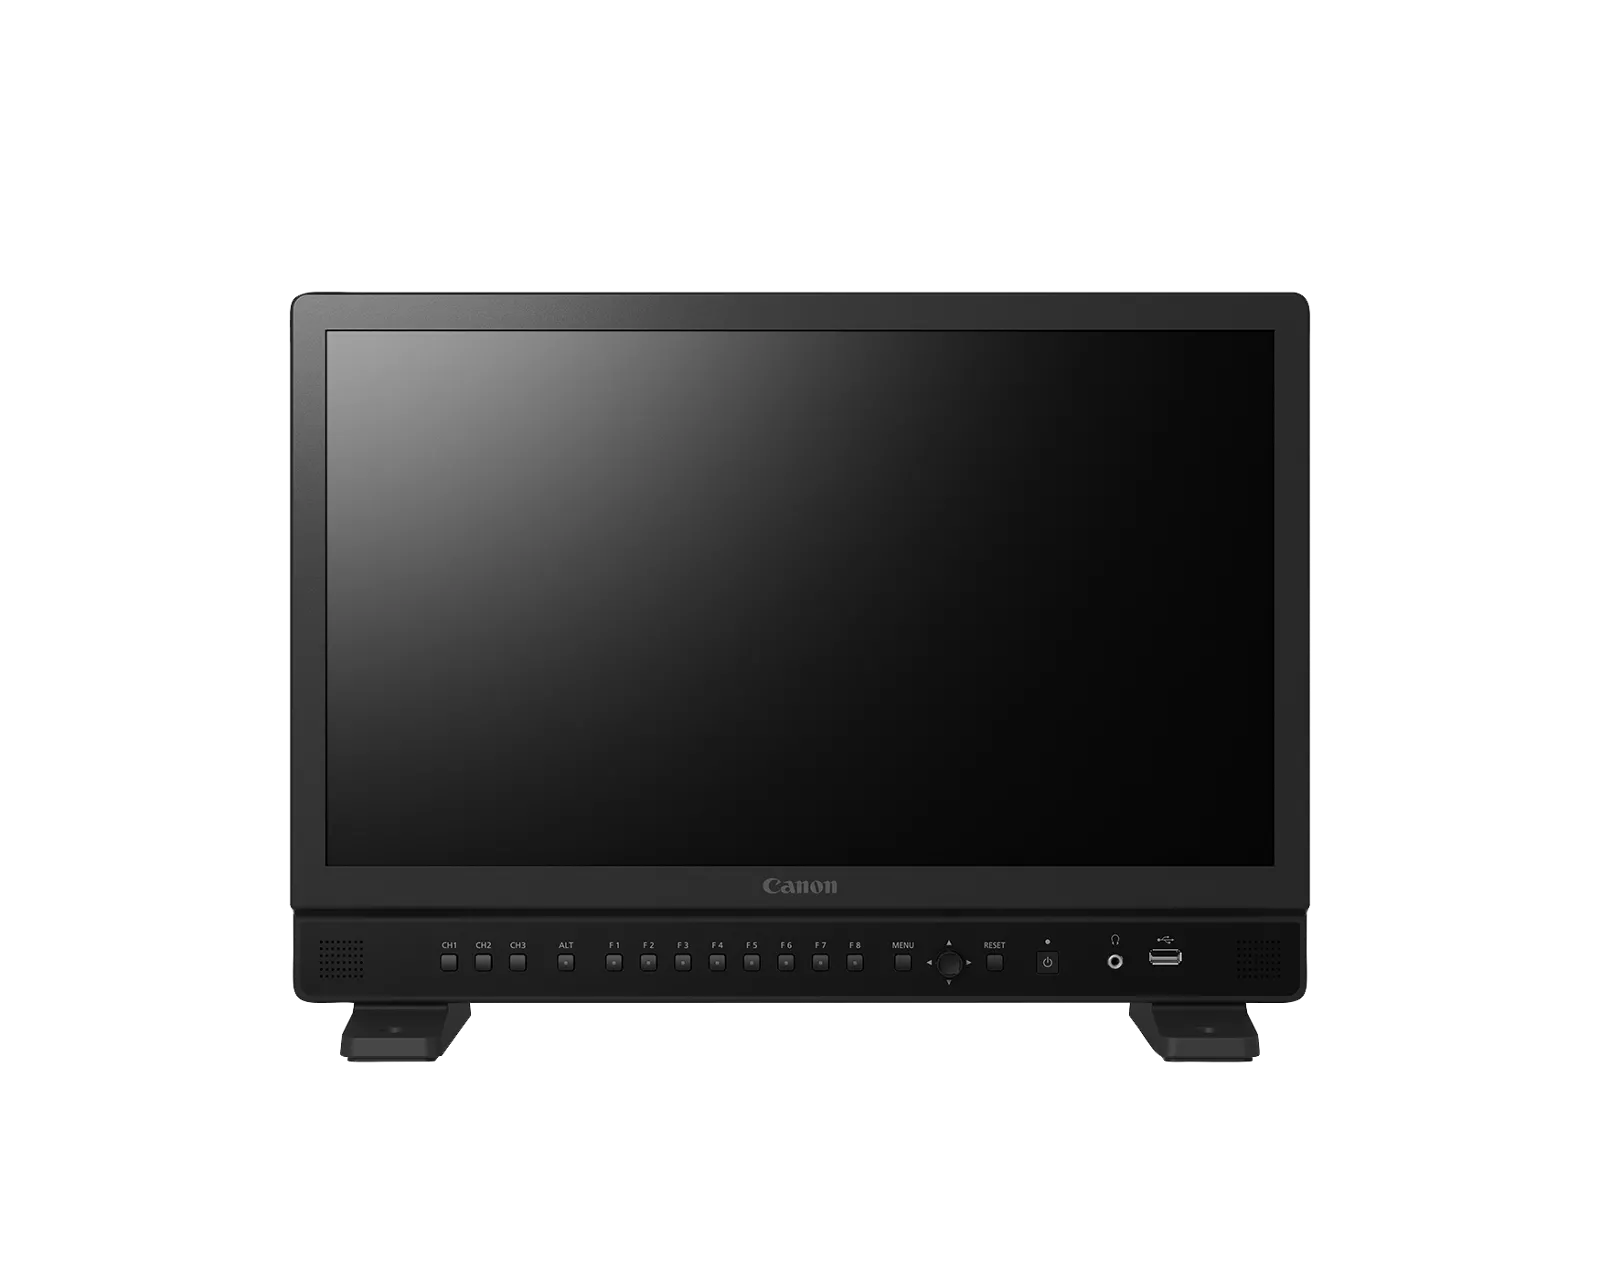 DP-V1830 UHD 4K Reference Display